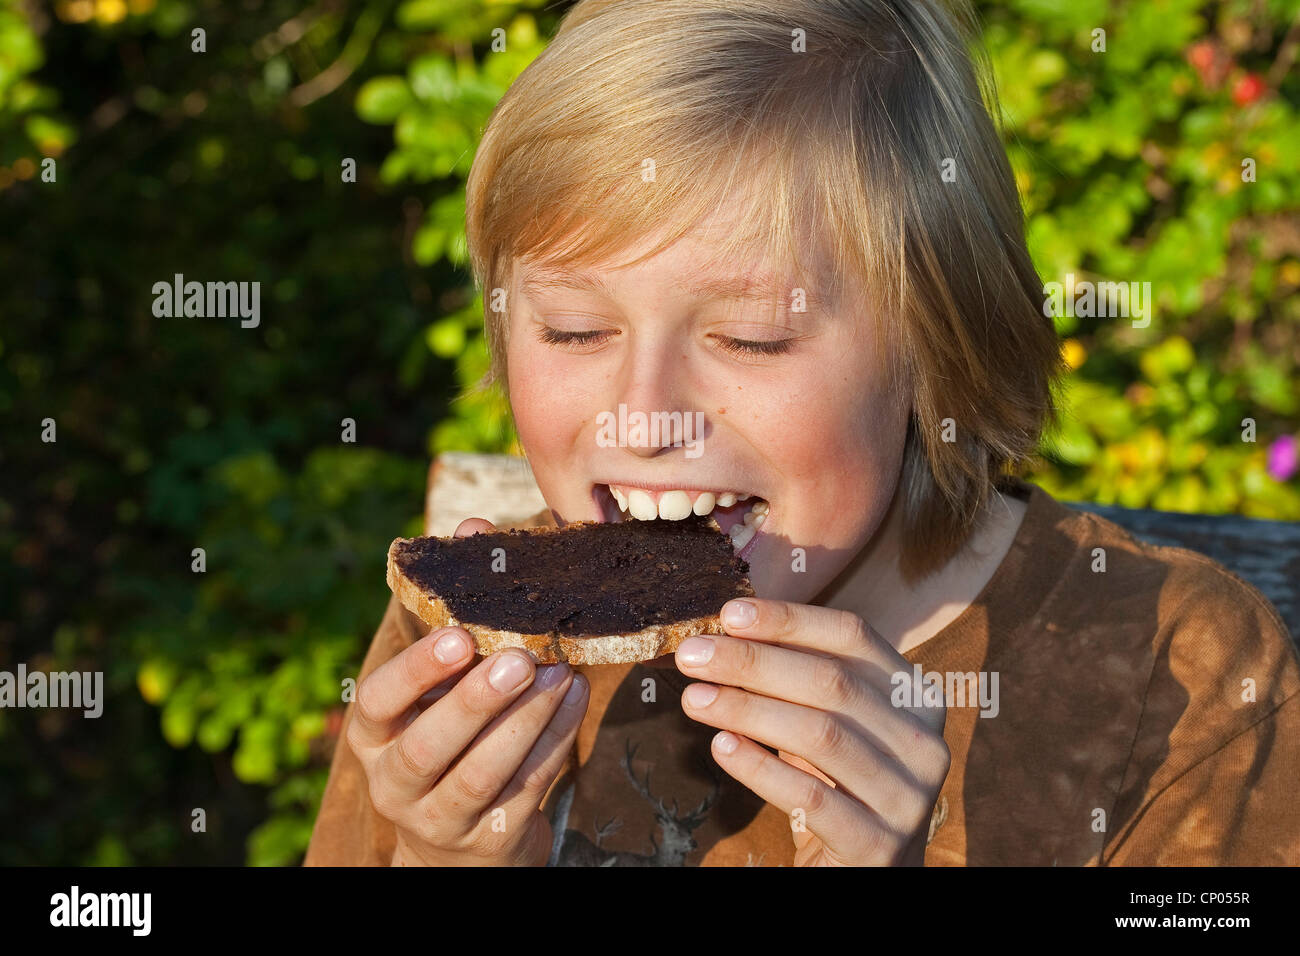 Le noisetier commun (Corylus avellana), garçon assis à la table de jardin de manger une tranche de pain avec pâte à tartiner au chocolat qu'il a faite de l'auto-prélèvement de noisettes, la poudre de cacao, le beurre et le sucre, Allemagne Banque D'Images